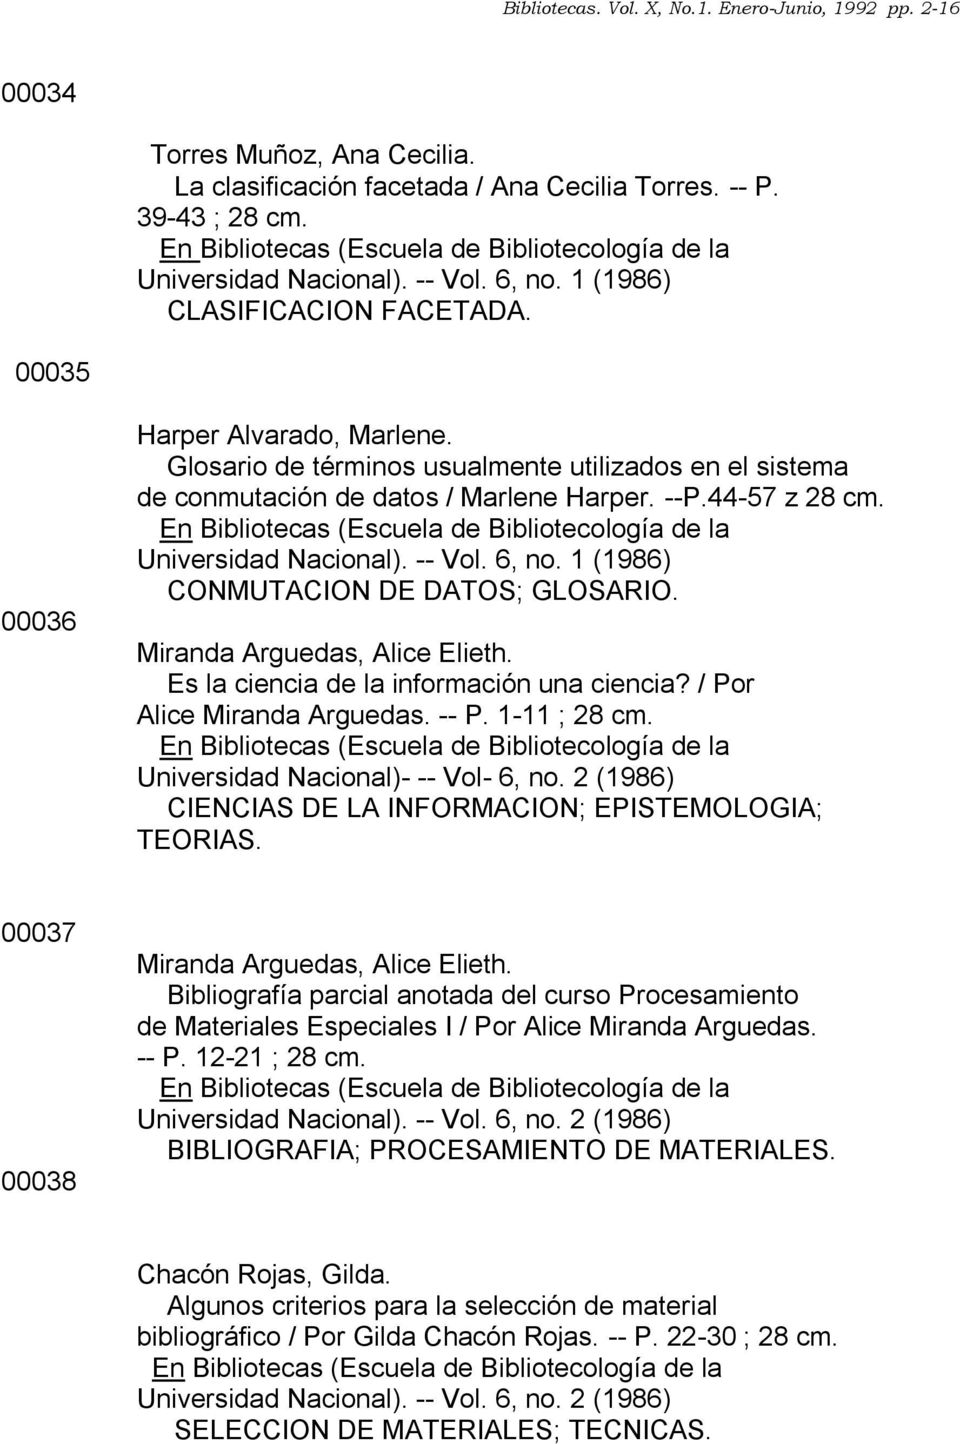 1 (1986) CONMUTACION DE DATOS; GLOSARIO. Miranda Arguedas, Alice Elieth. Es la ciencia de la información una ciencia? / Por Alice Miranda Arguedas. -- P. 1-11 ; 28 cm.